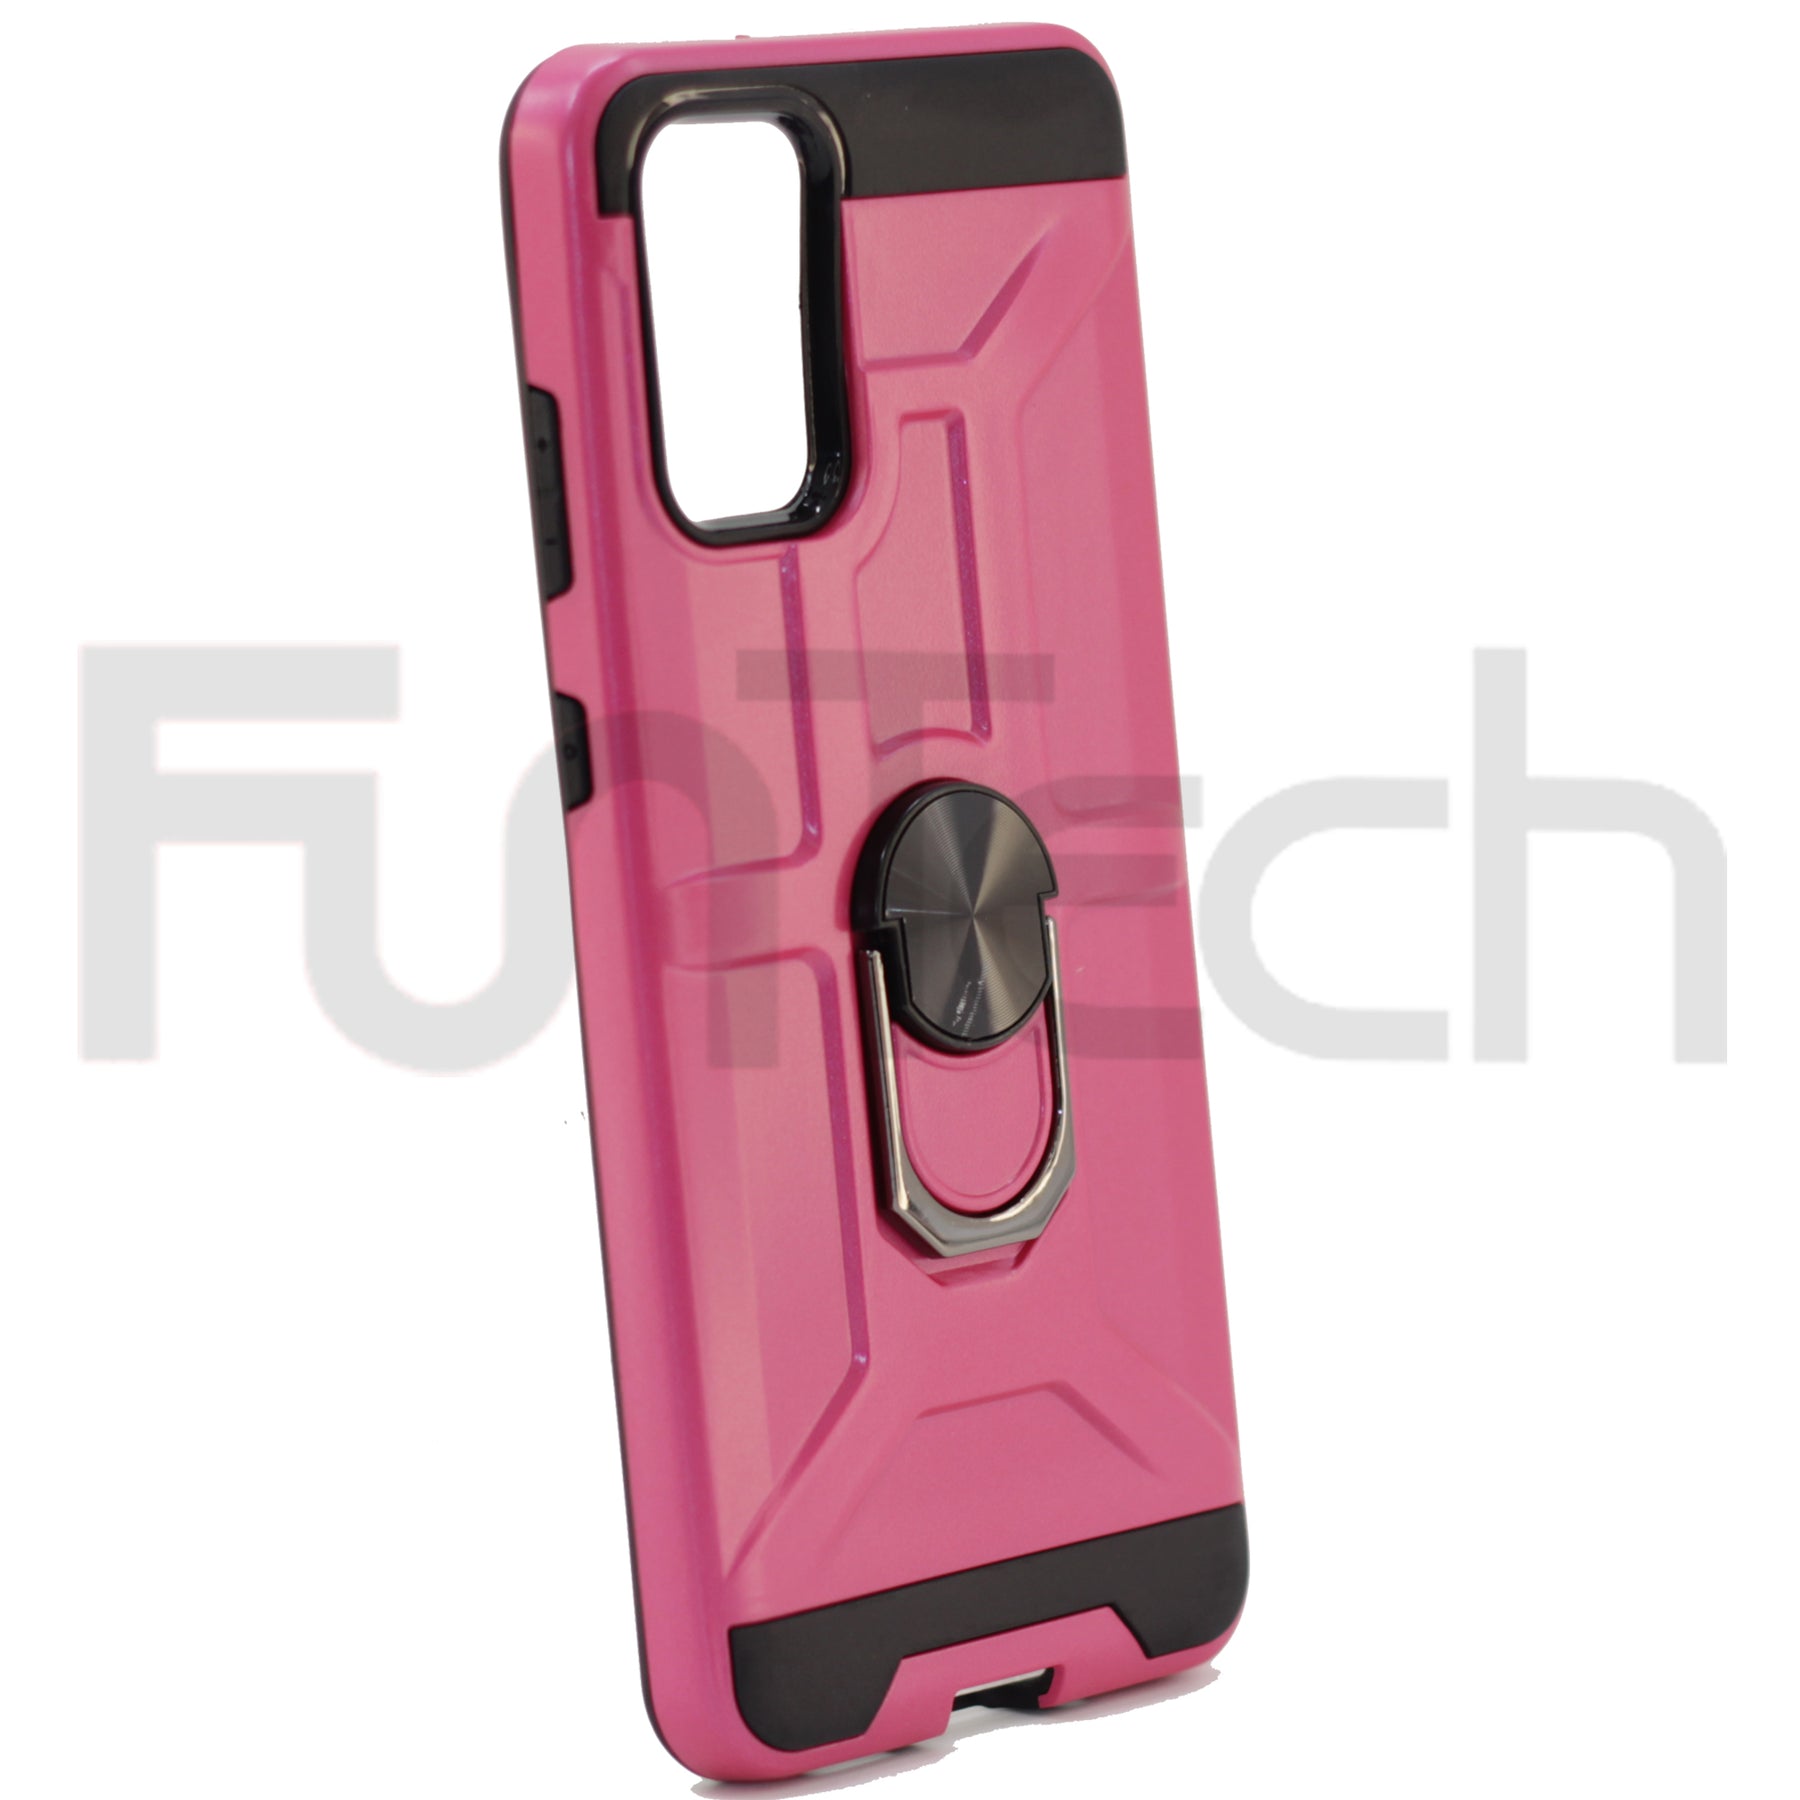 Samsung S20 Plus Case, Color Pink